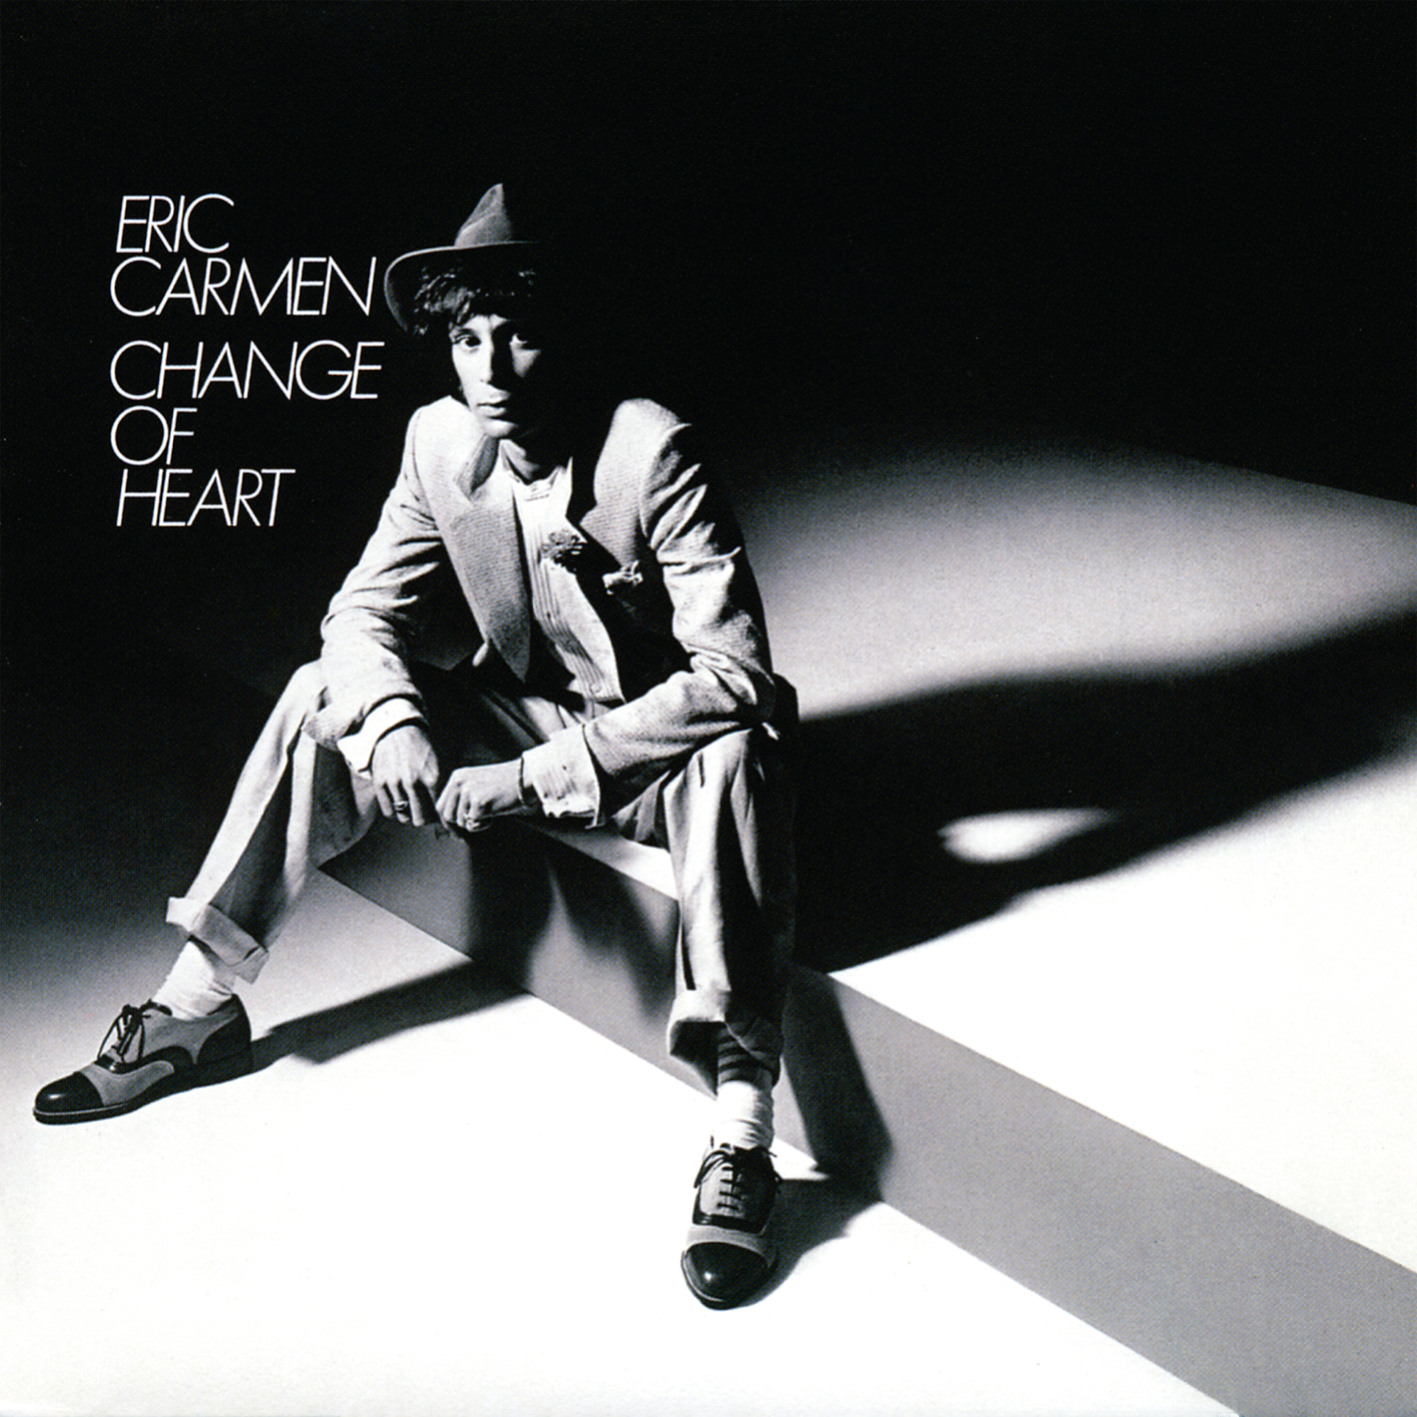 Eric Carmen - Change Of Heart (1978/2017) [HDTracks FLAC 24bit/96kHz]